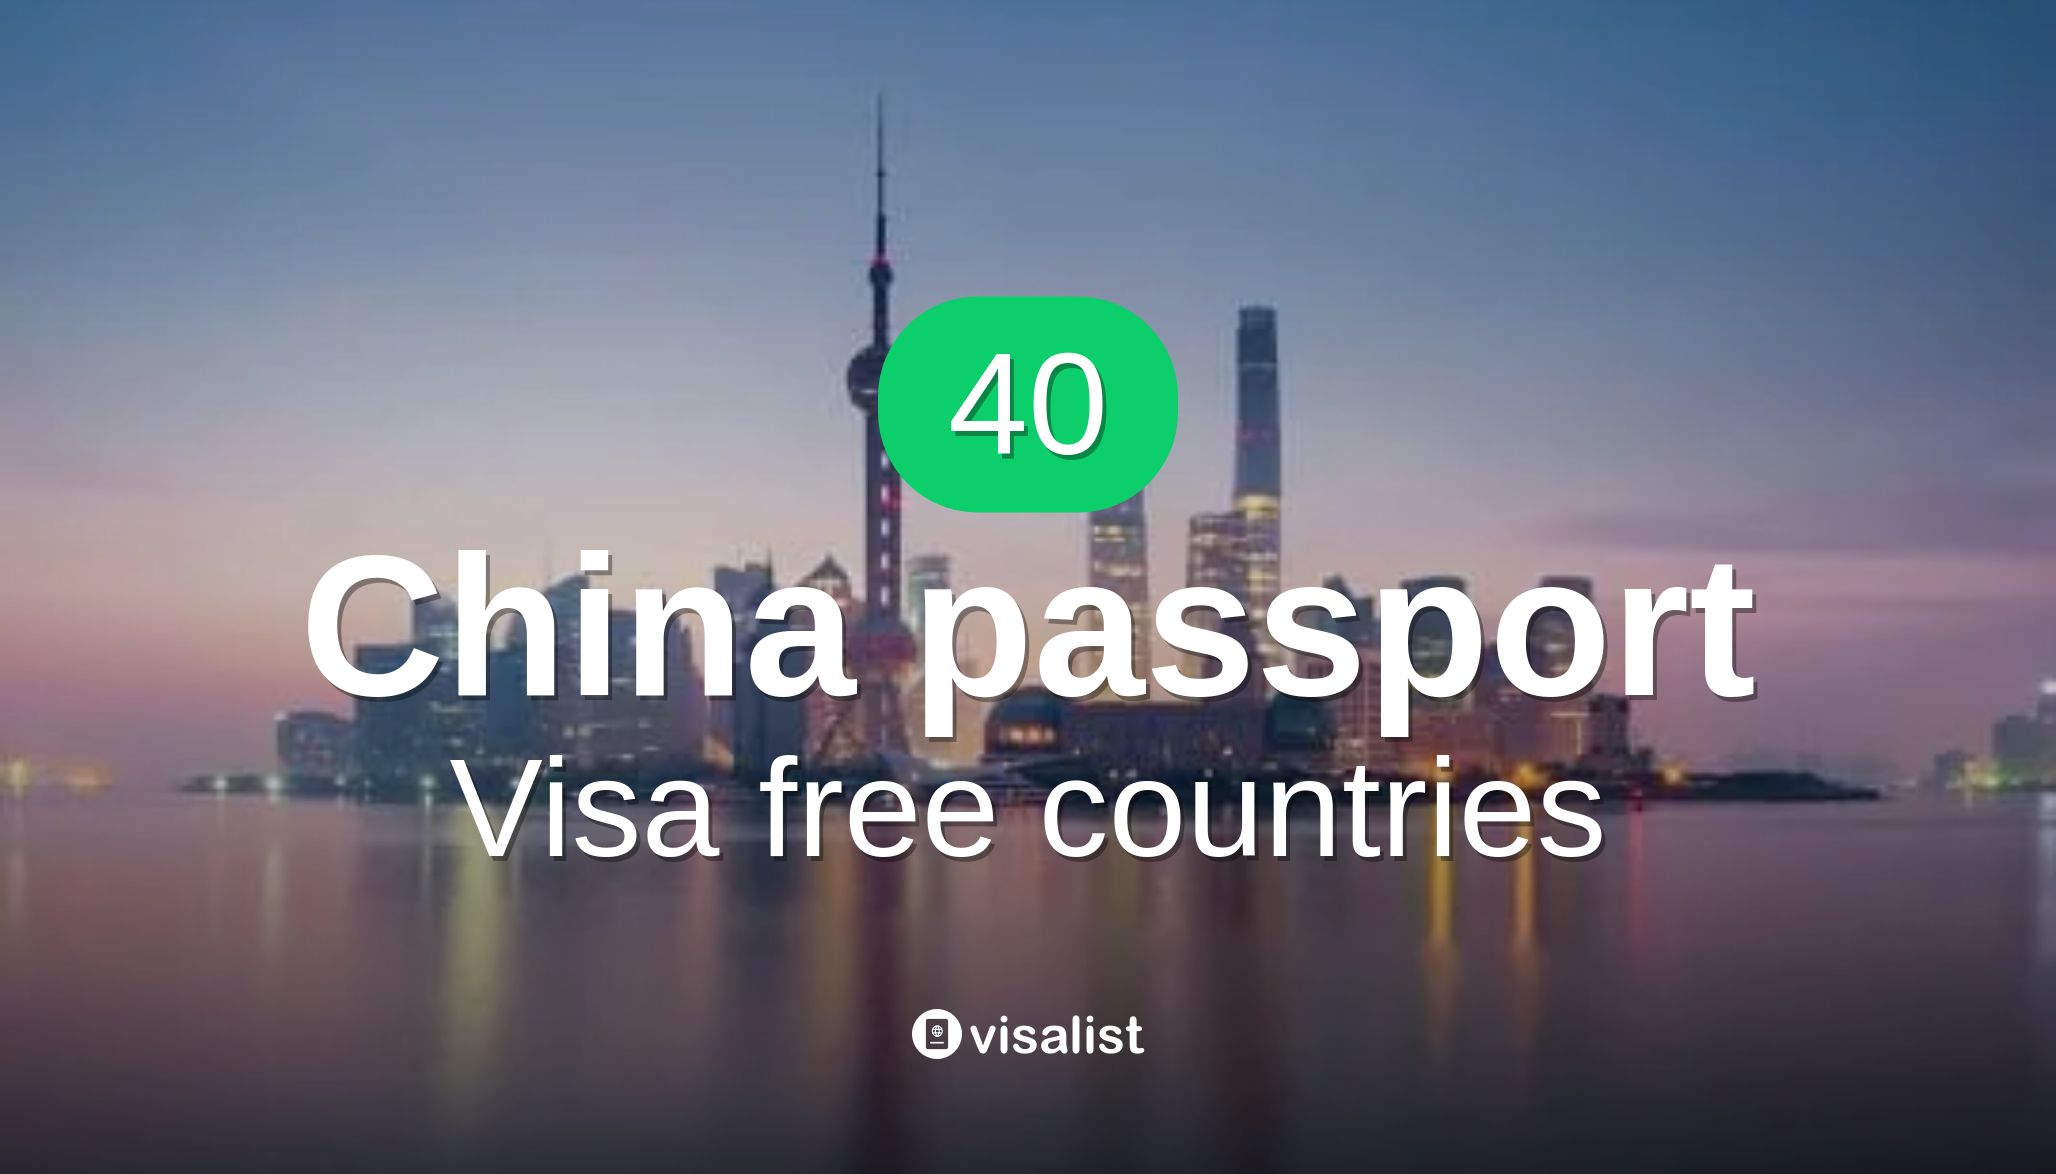 visa free countries to visit china